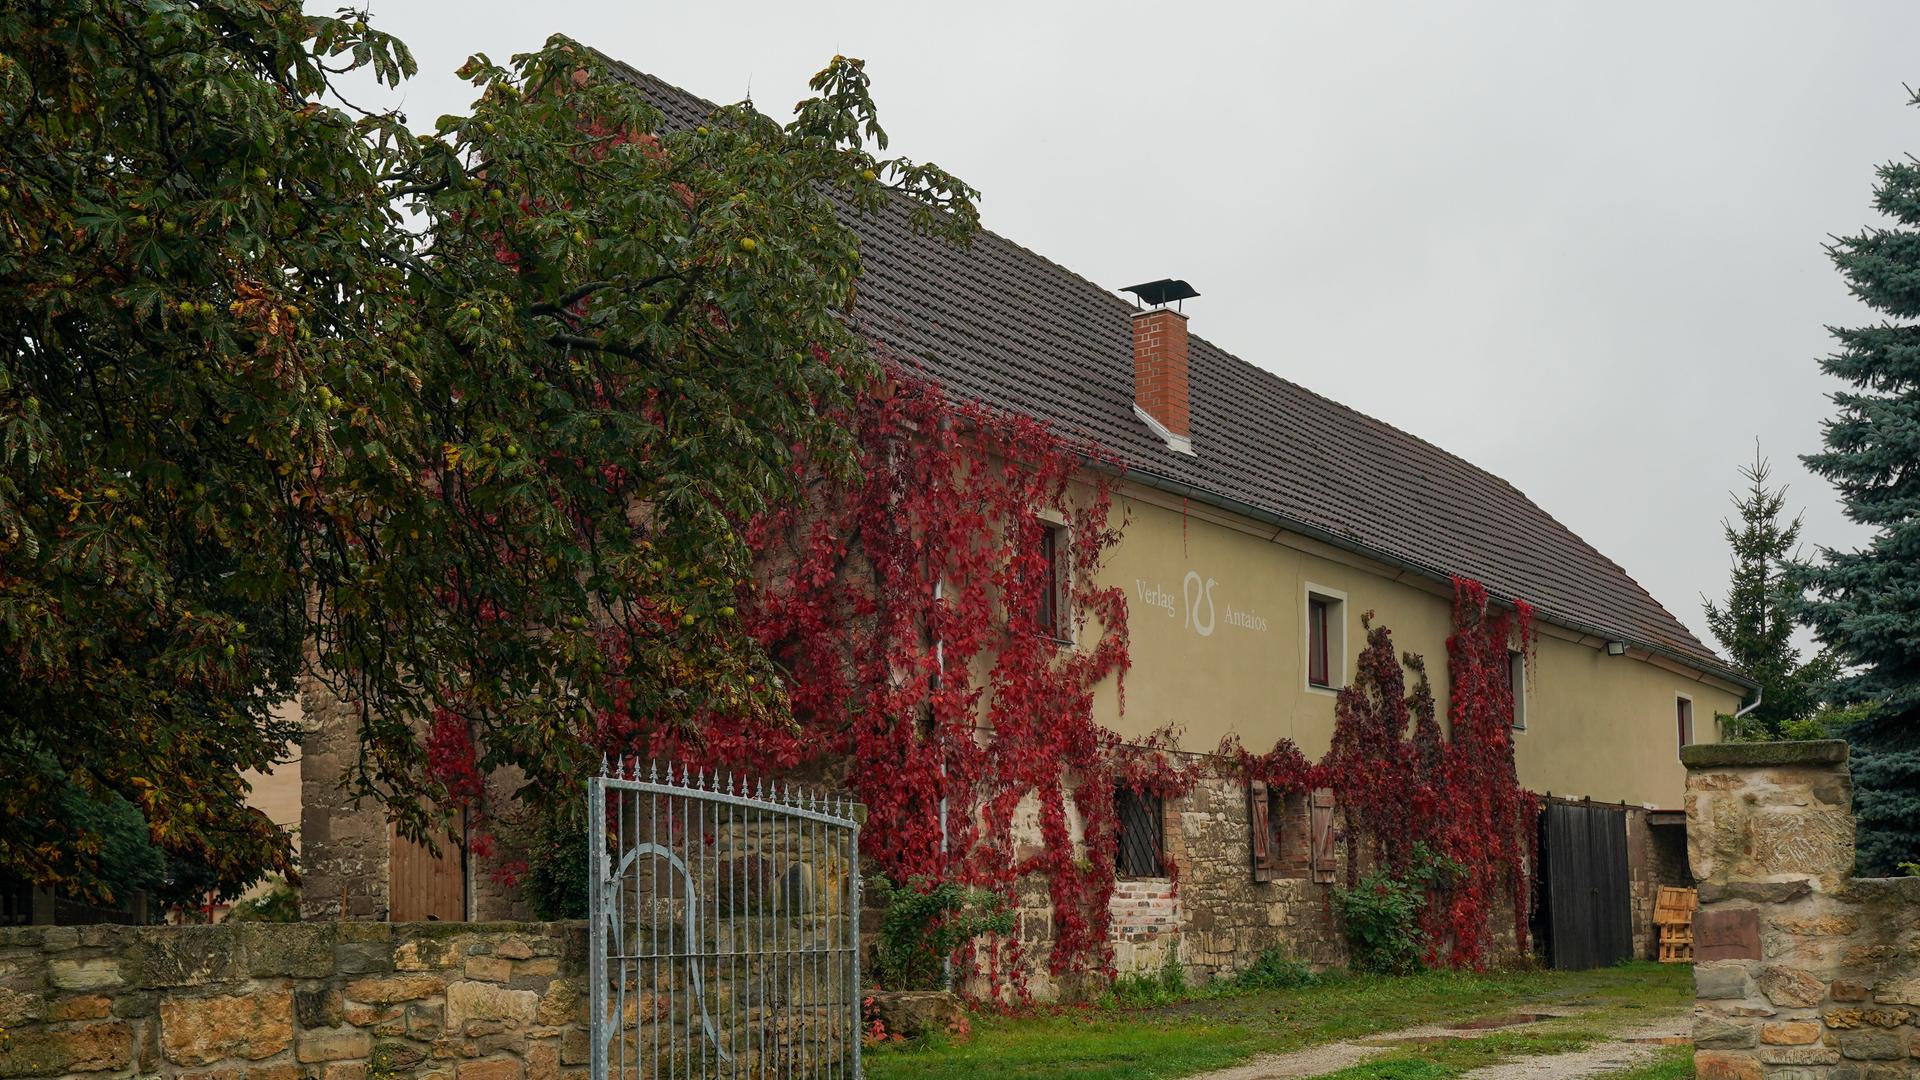 Teil des Anwesens des Verlegers Kubitschek mit dem Verlag "Antaios" und dem "Institut für Staatspolitik" in Schnellroda: Ein Weg mit Kopfsteinpflaster führt auf ein geöffnetes Tor zu, im Hintergrund ist ein gelbes Gebäude zu sehen.